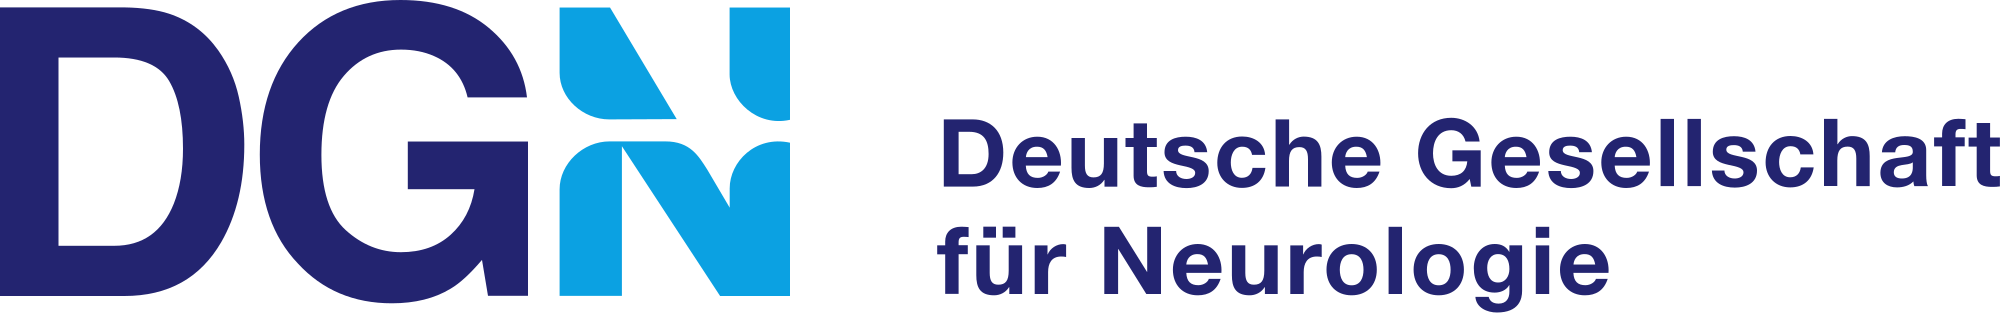 DGN - Deutsche Gesellschaft für Neurologie Logo